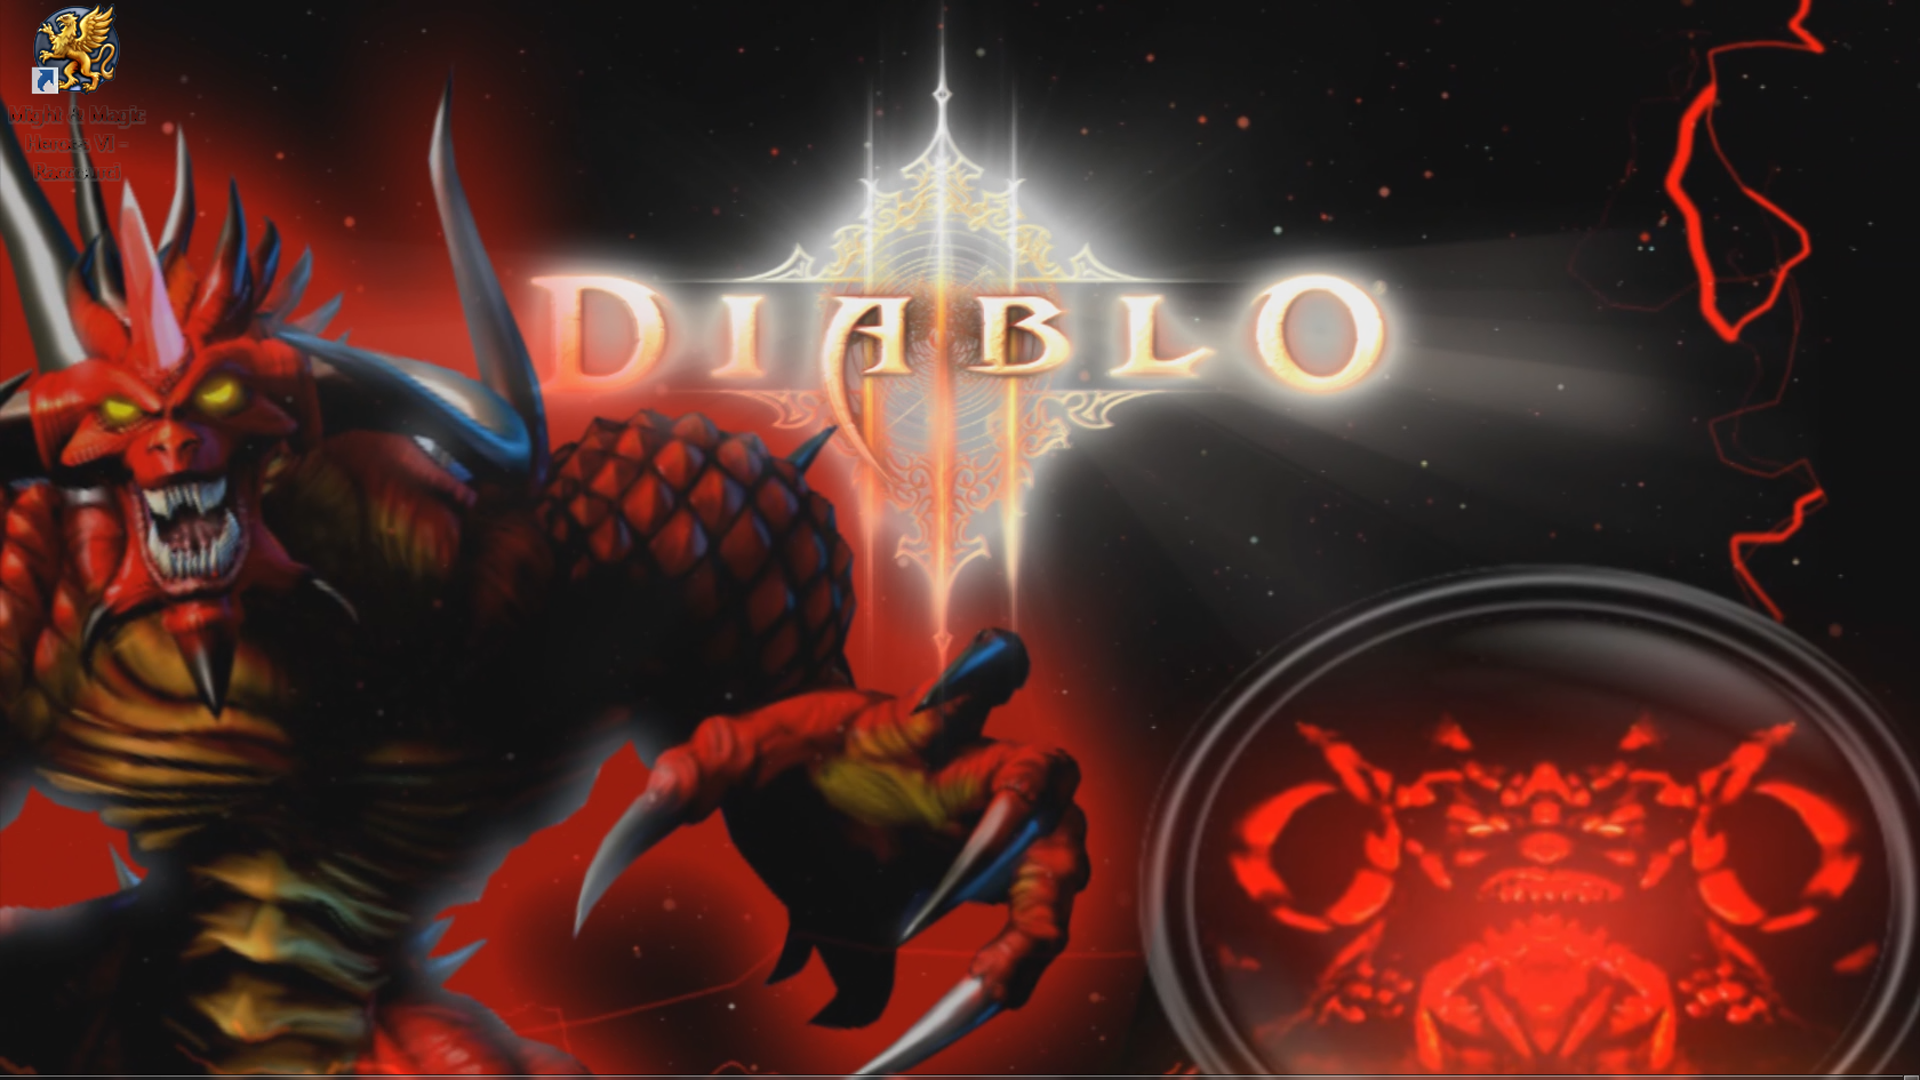 Diablo Animated Wallpaper Dreamscene By Jeffrockr